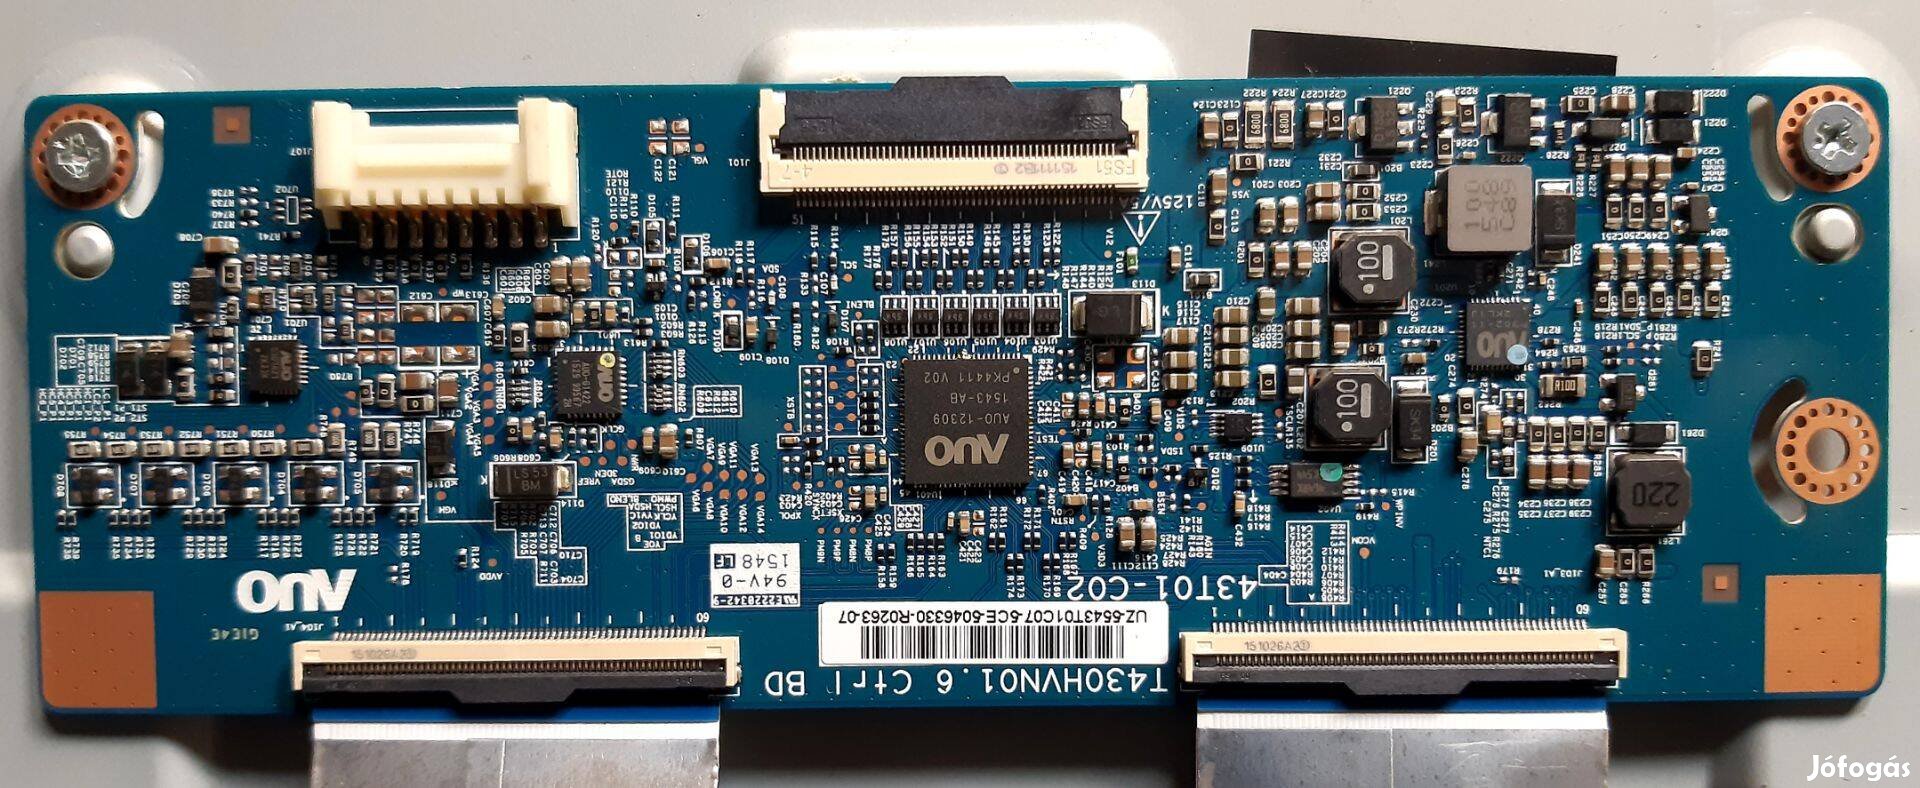 Samsung UE43J5500Awxxh 43T01-C02 T-con board